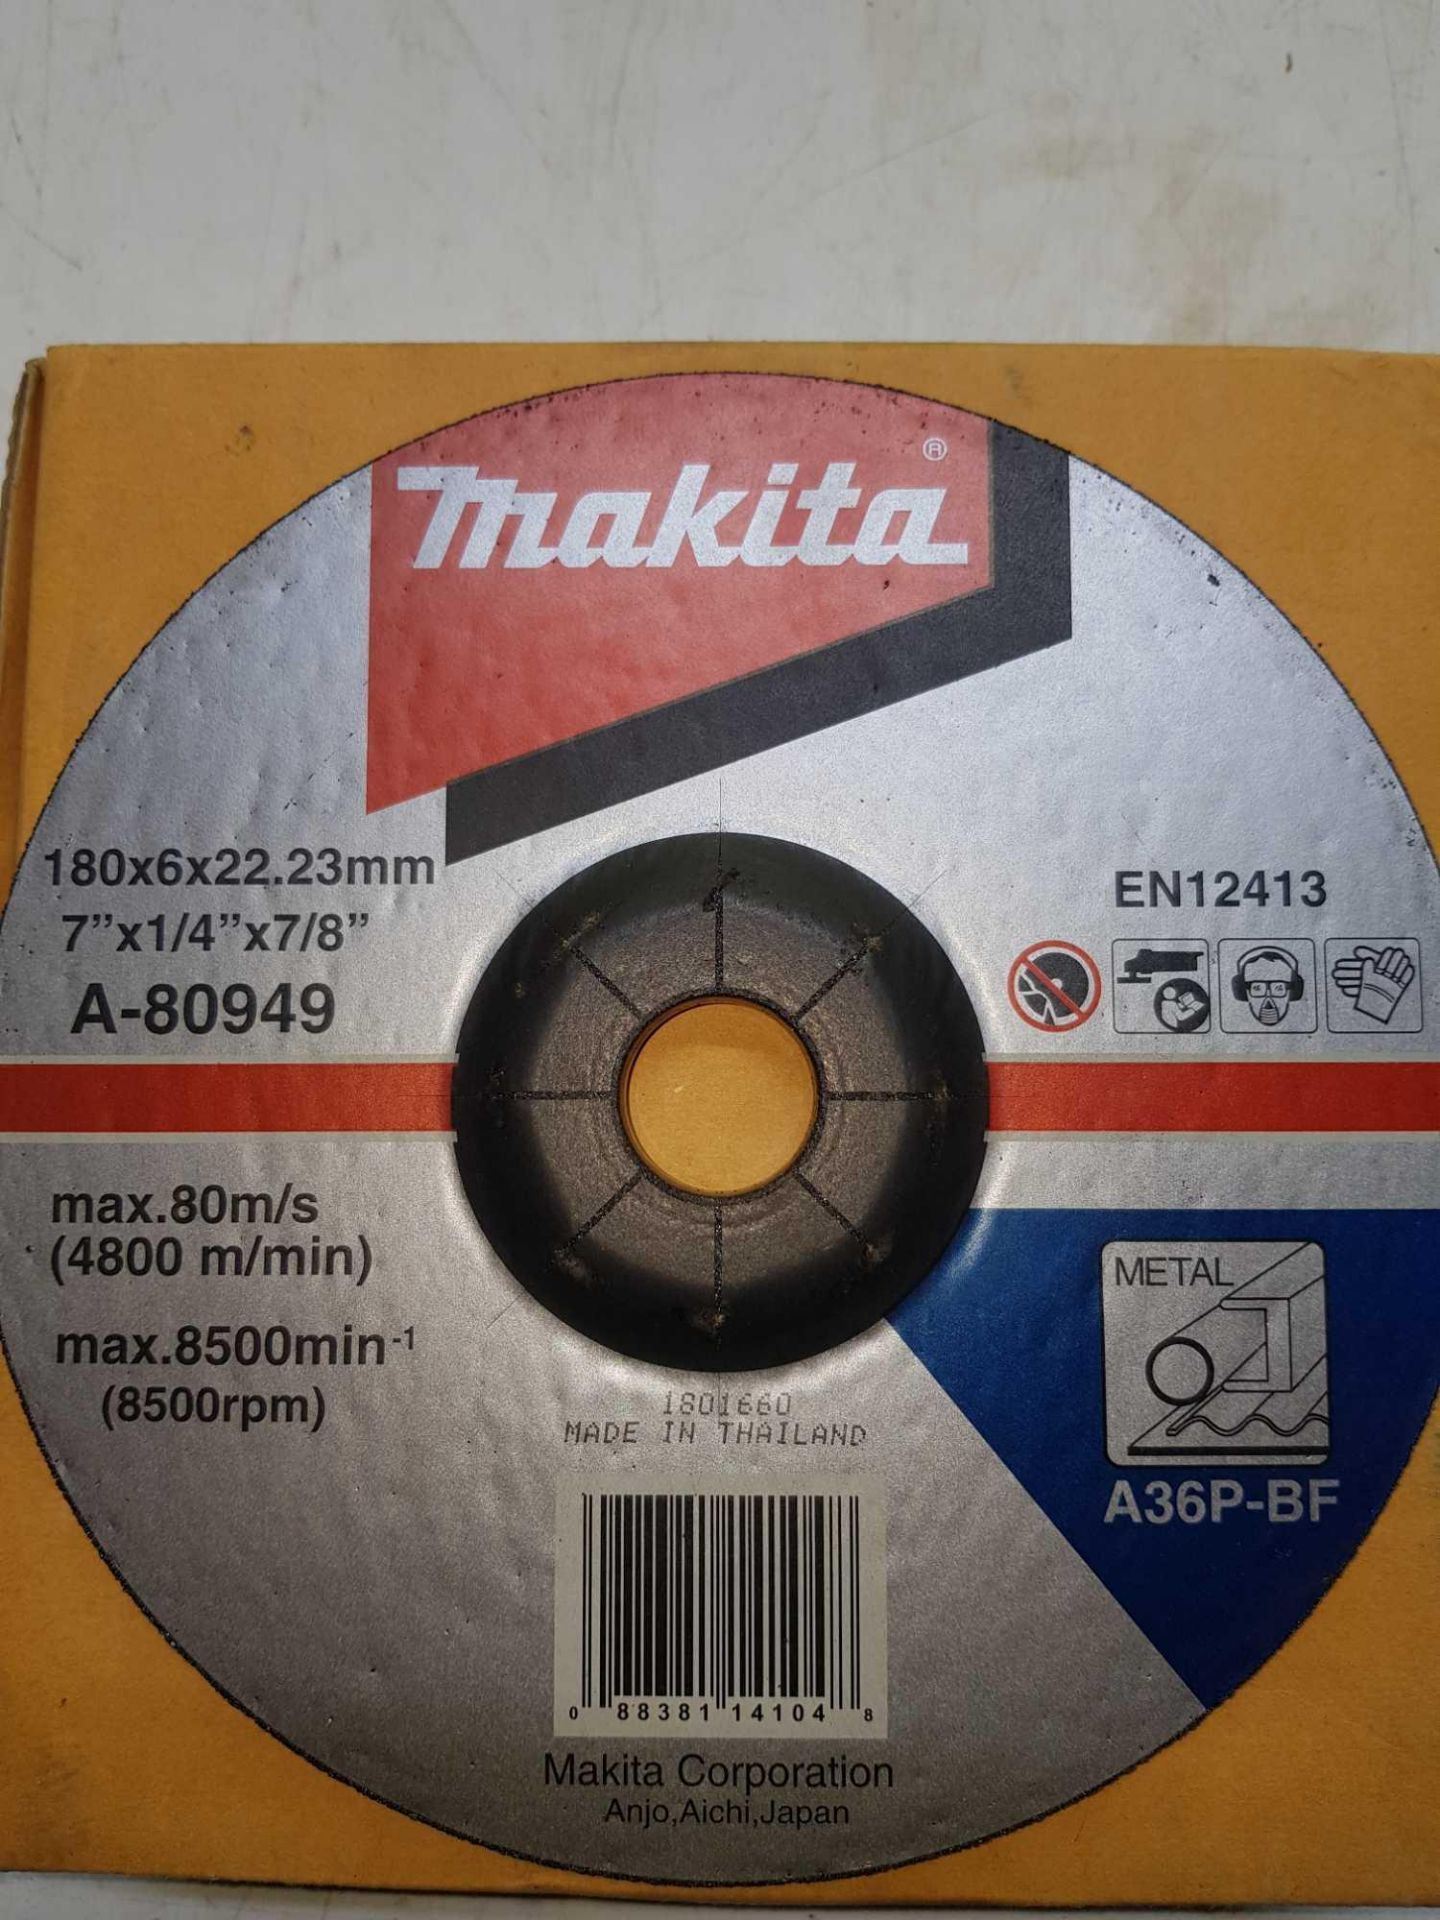 Makita metal grinding discs - Image 2 of 2